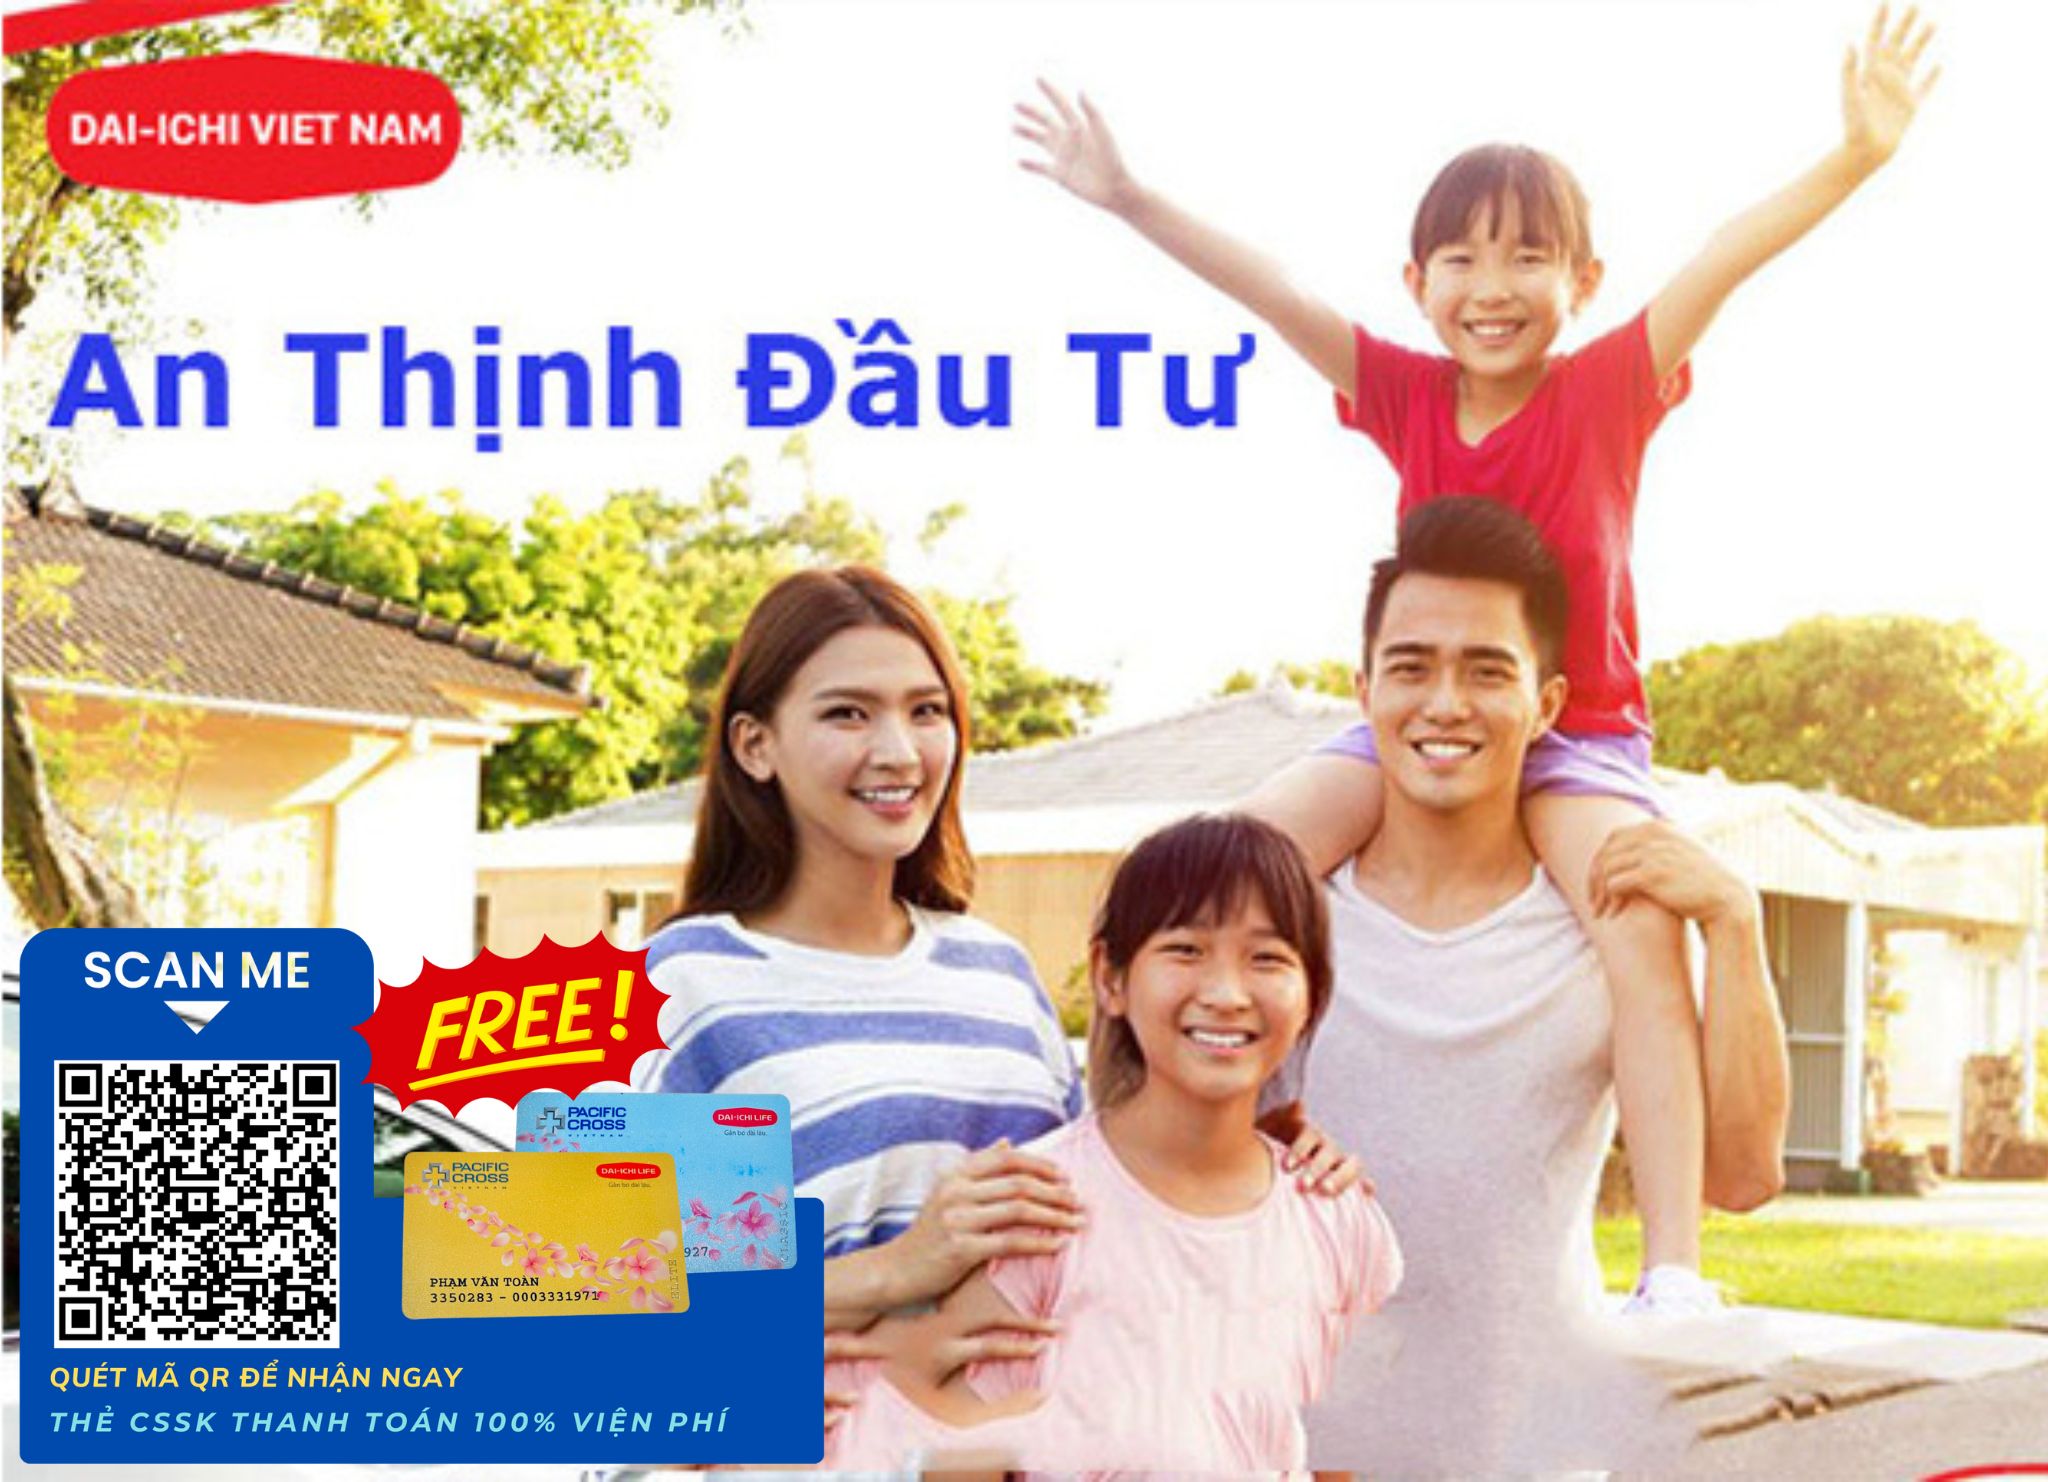 BẢO HIỂM NHÂN THỌ AN THỊNH ĐẦU TƯ Dai-ichi Life Việt Nam